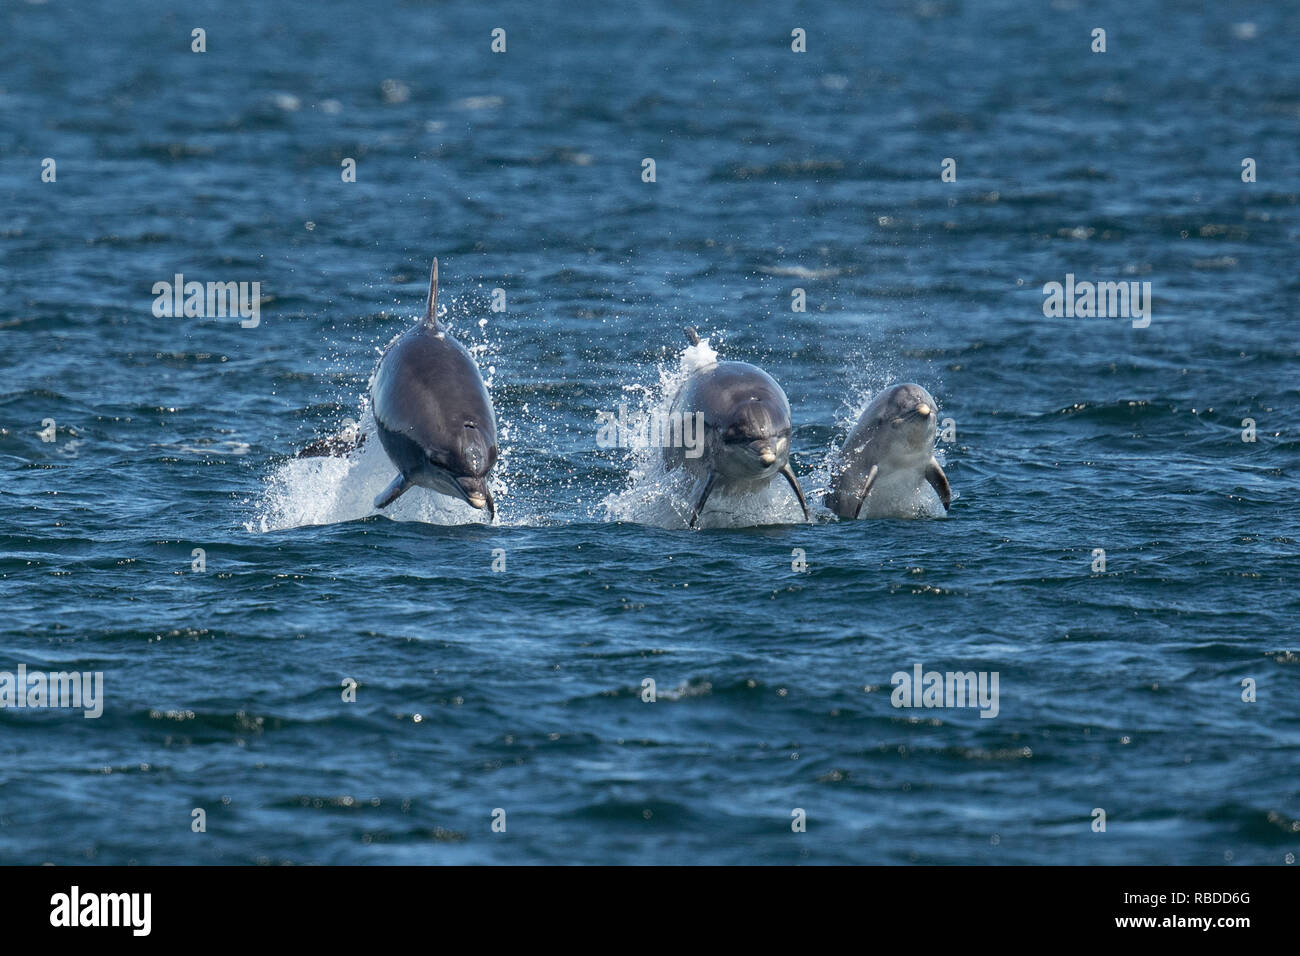 INVERNESS, Escocia: tres delfines mulares carrera por el agua a punto de Chanonry cerca de Inverness, Escocia. Tres divertidos delfines pone en un impresionante despliegue de curiosos en como han infringido y voltear a través de las aguas del punto Chanonry cerca de Inverness. Los delfines mulares incluida la miel, un joven de 11 años de edad y madre de dos jóvenes también pueden ser vistos nadando en perfecta sintonía, apareciendo a la raza mutuamente a través del agua en las Tierras Altas de Escocia. WDC / Charlie Phillips / mediadrumworld.com Foto de stock